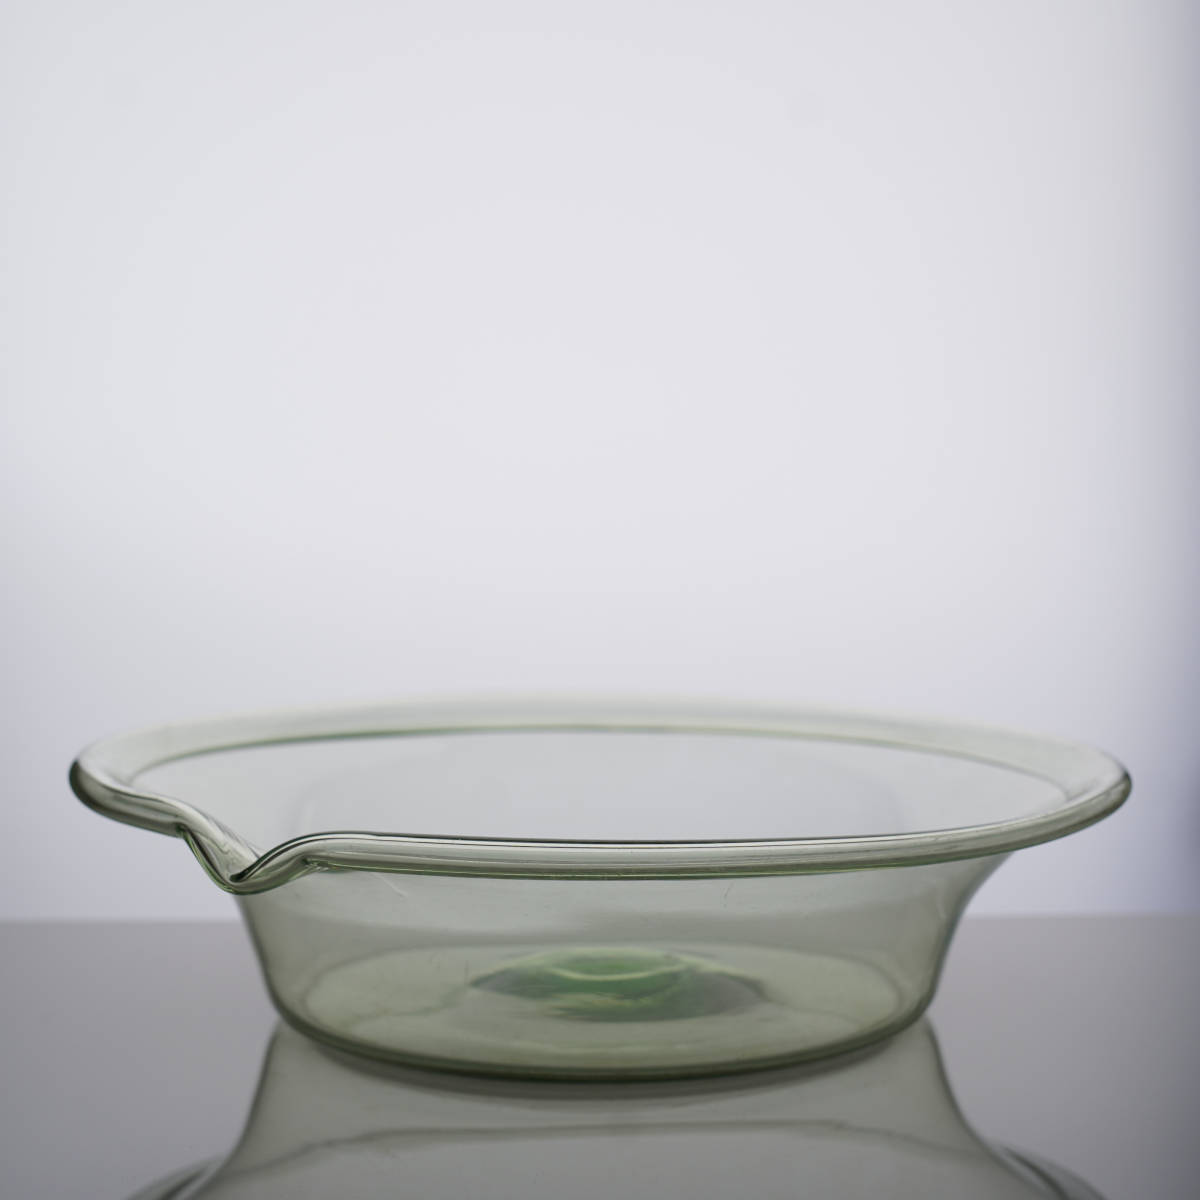 1800年代 スウェーデン 手吹き 色ガラス片口鉢 / アンティーク 19世紀 北欧 硝子 ミルクボウル ミキシングボウル グリーン 大鉢 水盤の画像3